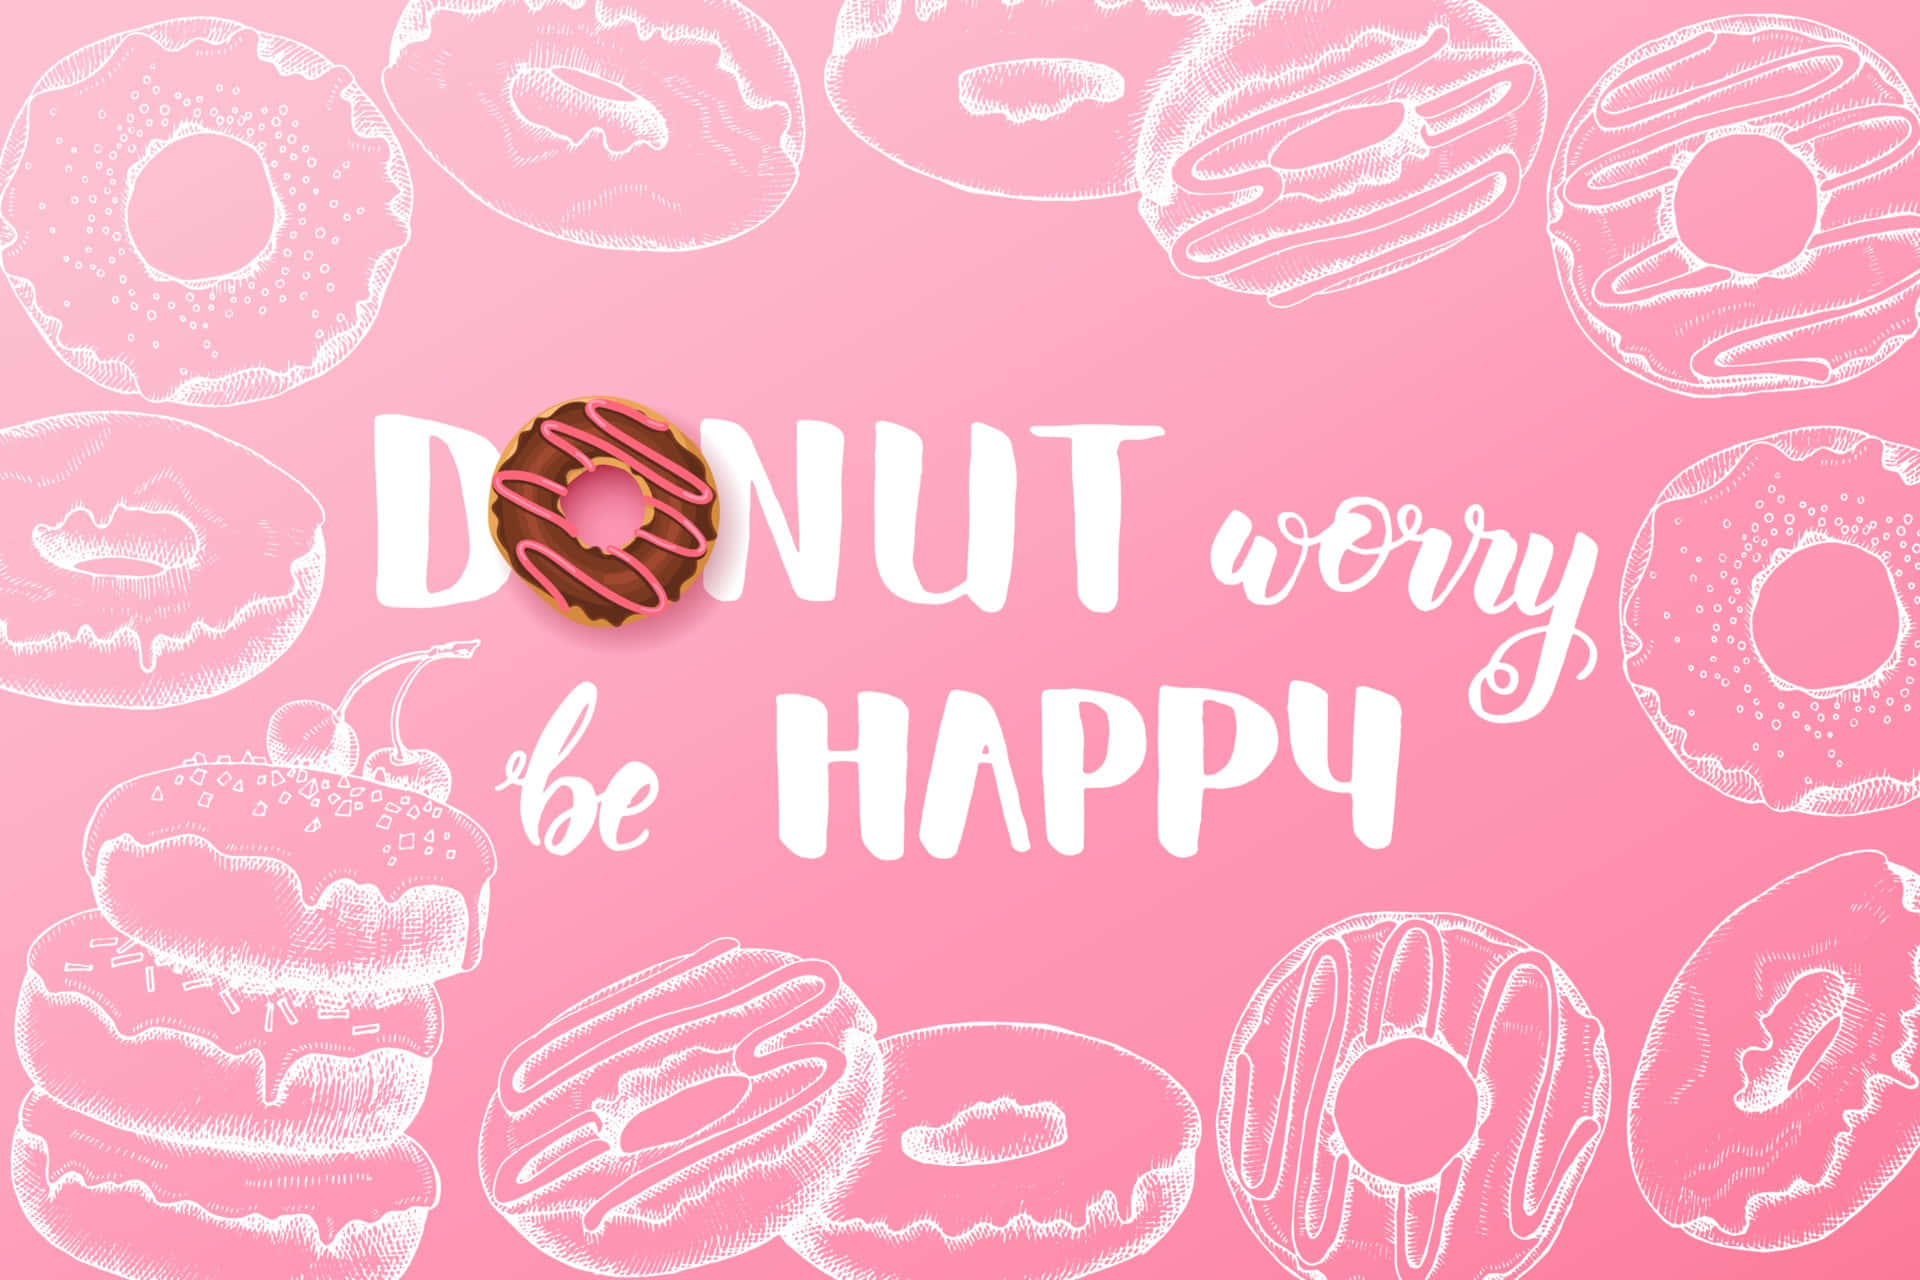 Donuts på en rosa baggrund med ordene 